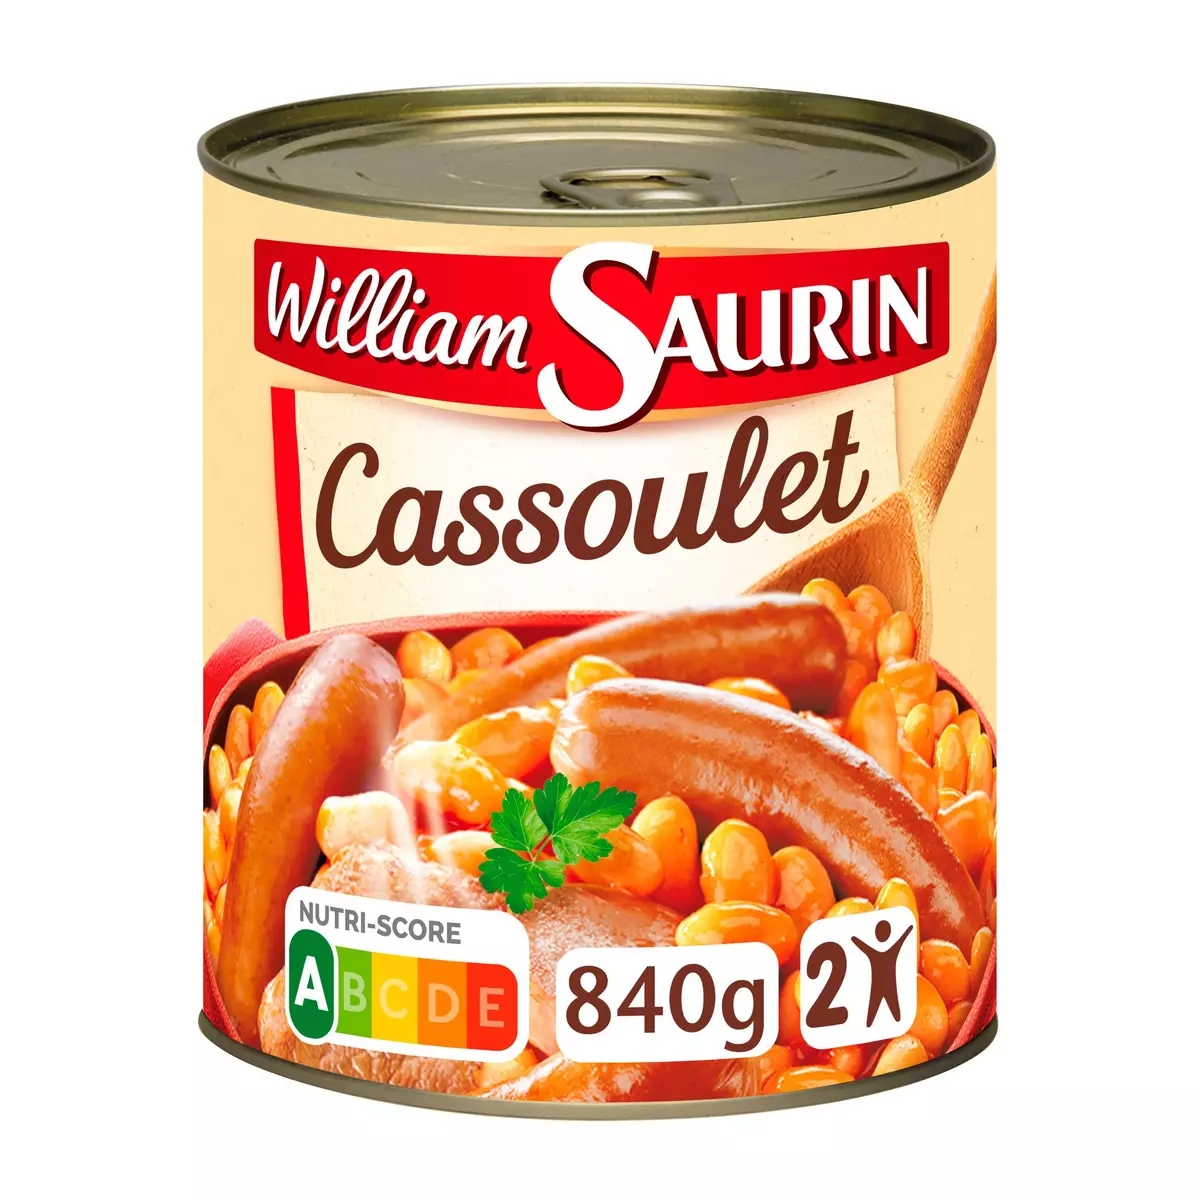 WILLIAM SAURIN Cassoulet mitonné sans colorant sans arôme artificiel 2 personnes 840g